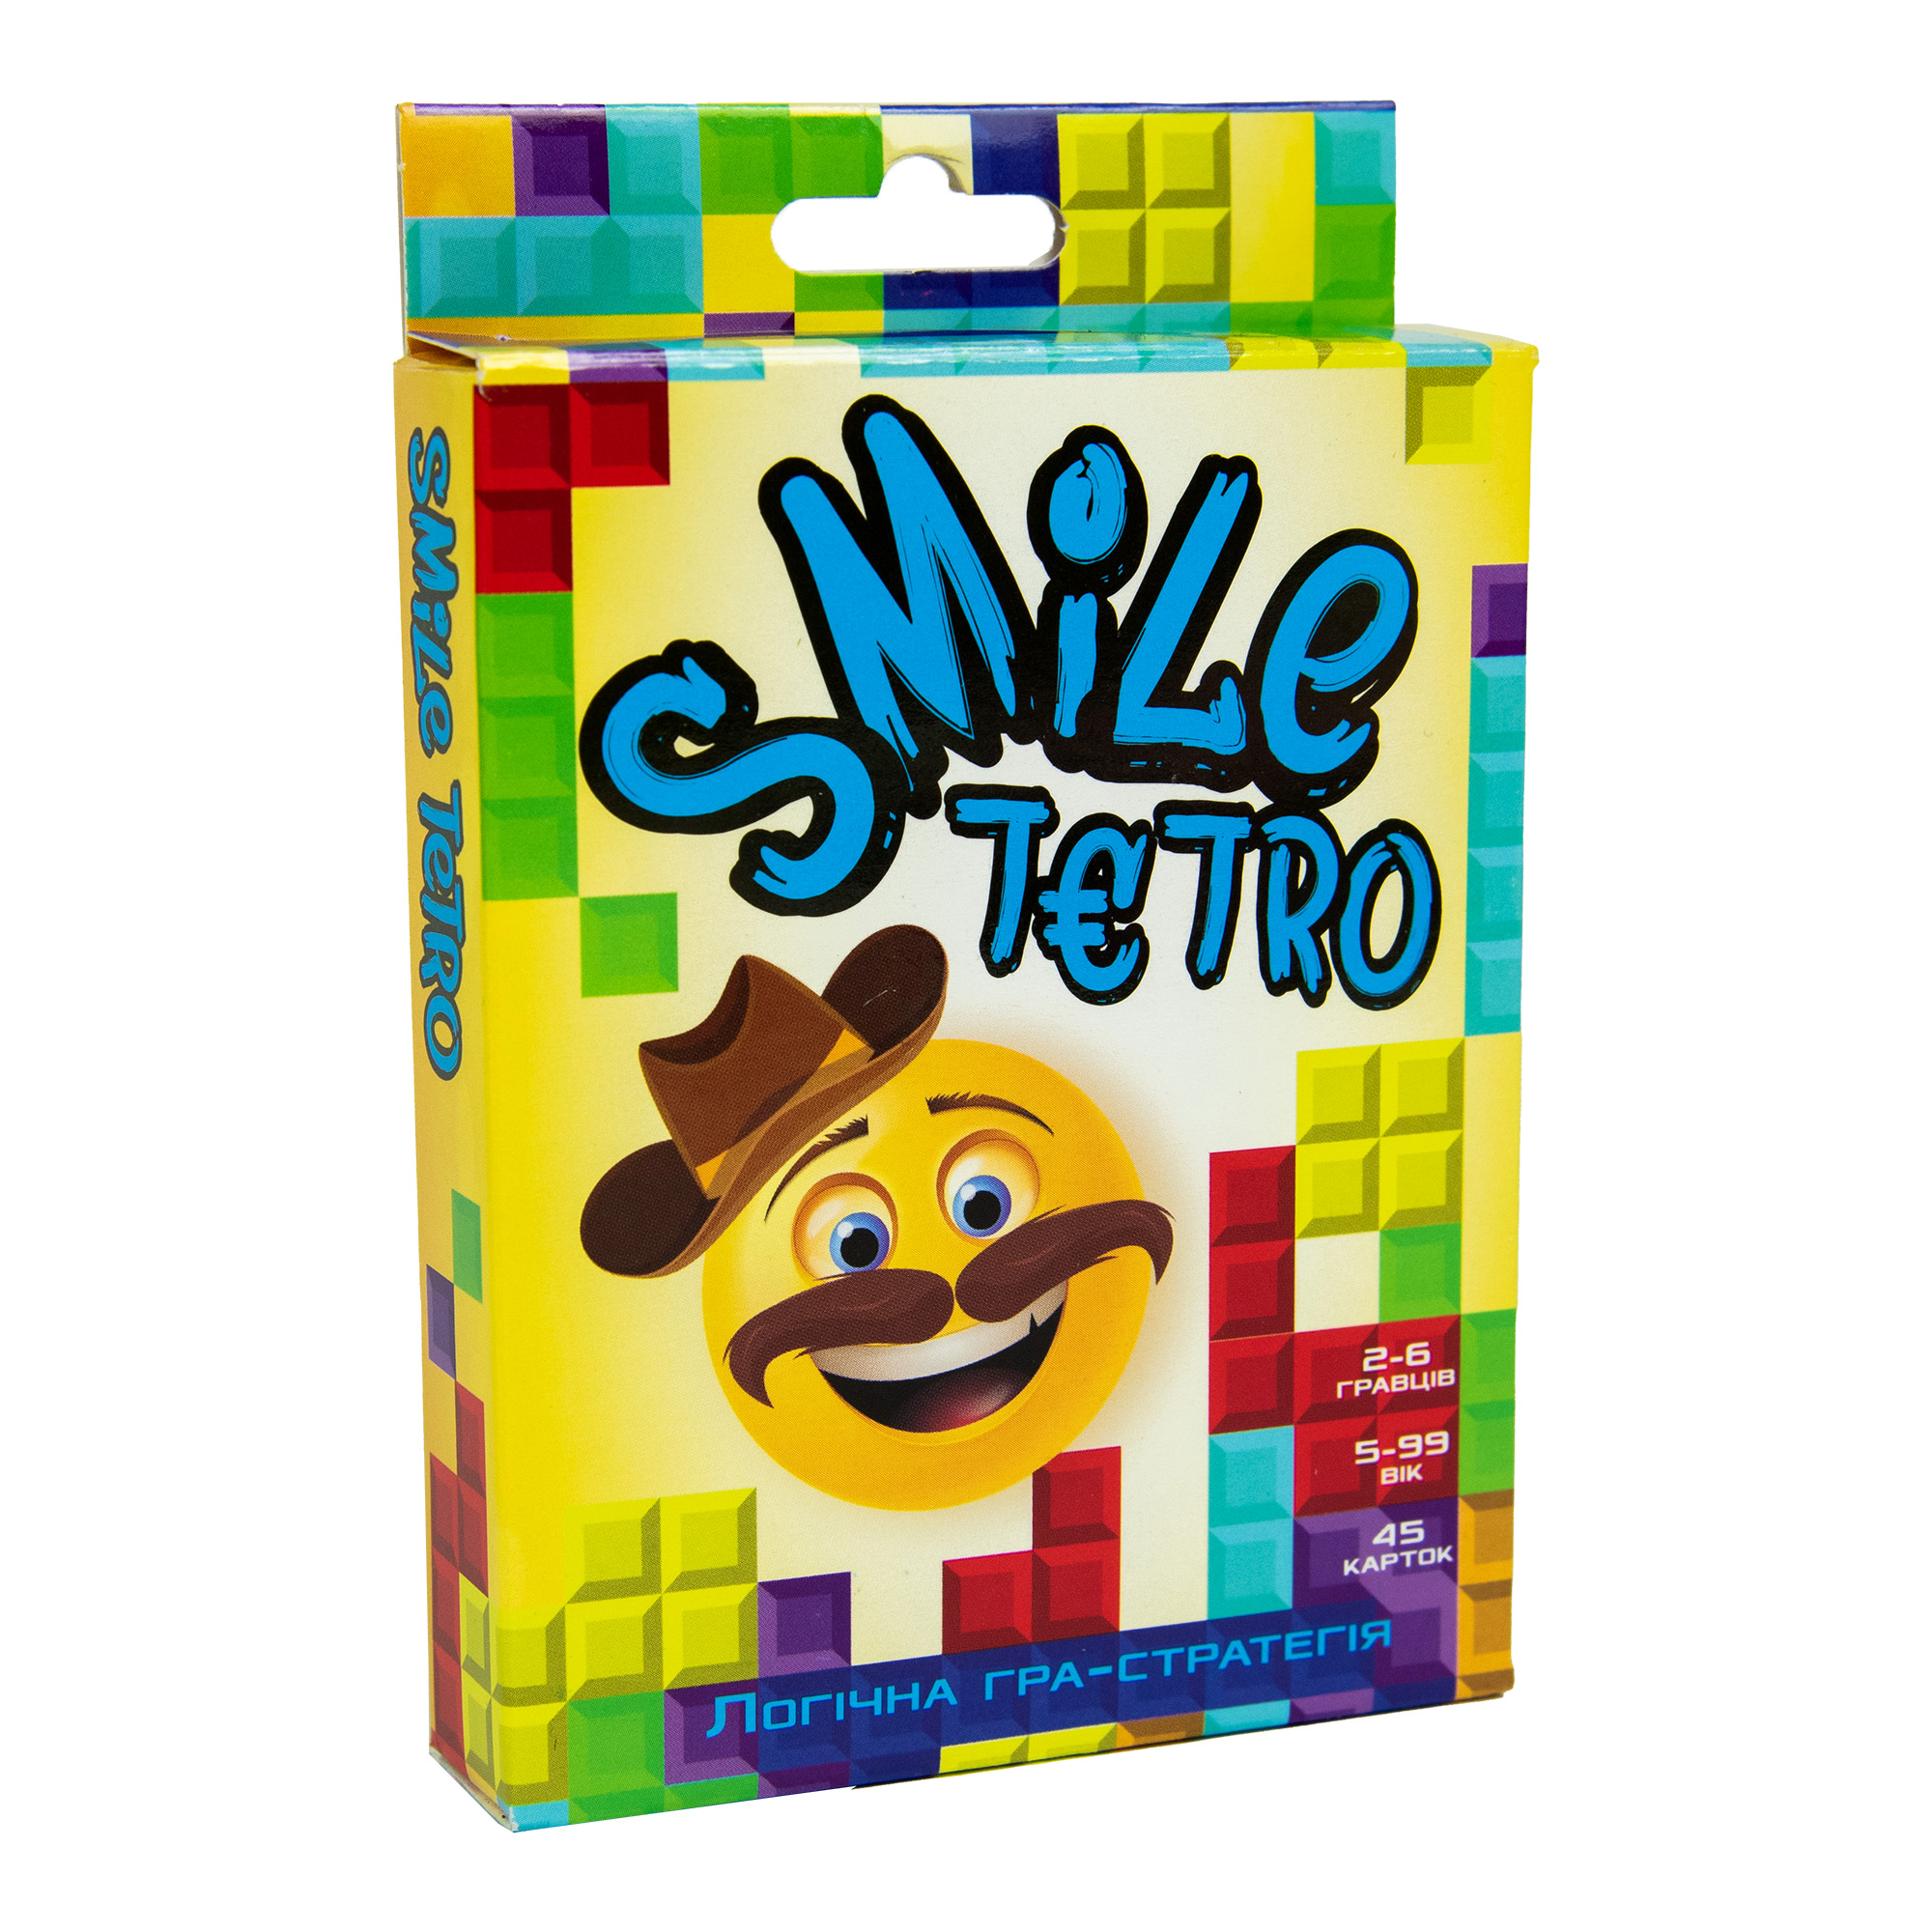 Board game 30280 (ukr) "Smile tetro", in a box of 9,1-11,5-2,2 cm